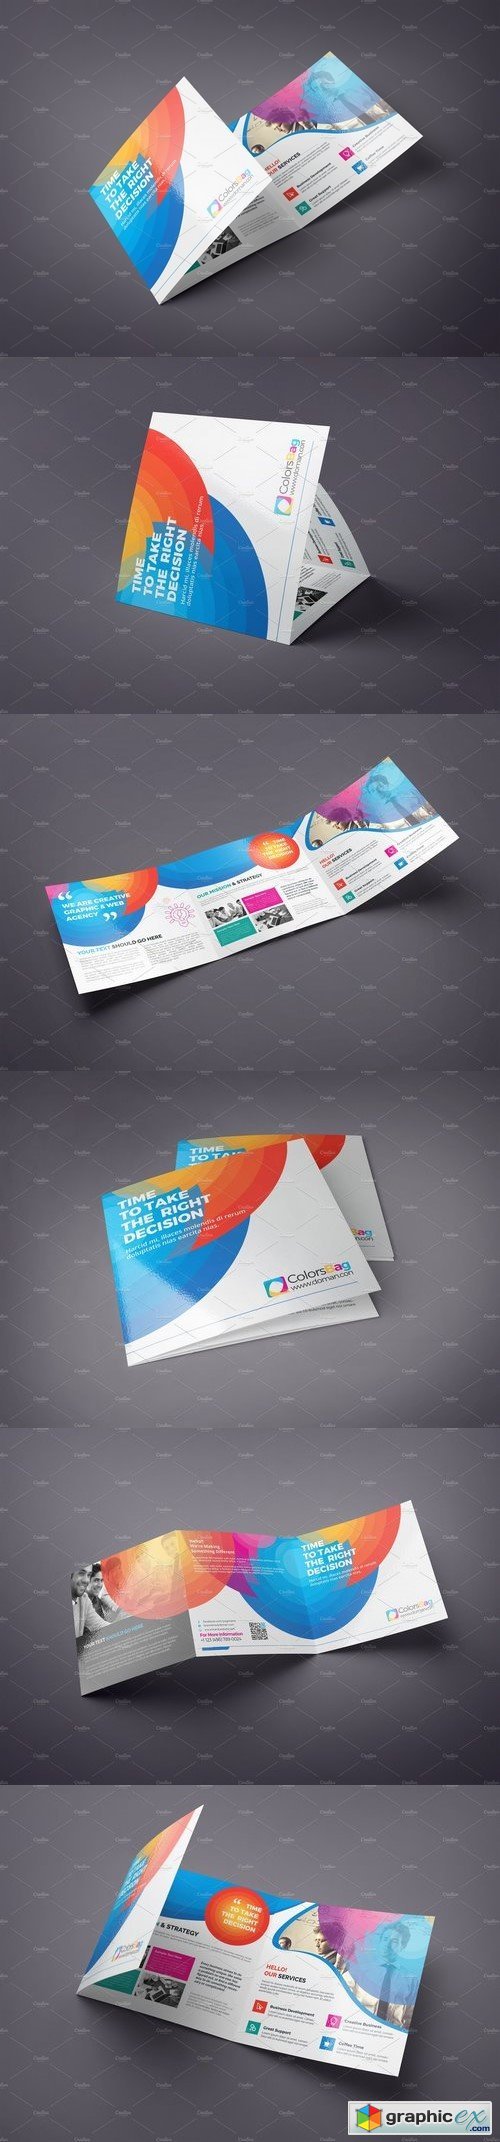 Square Tri Fold Brochure